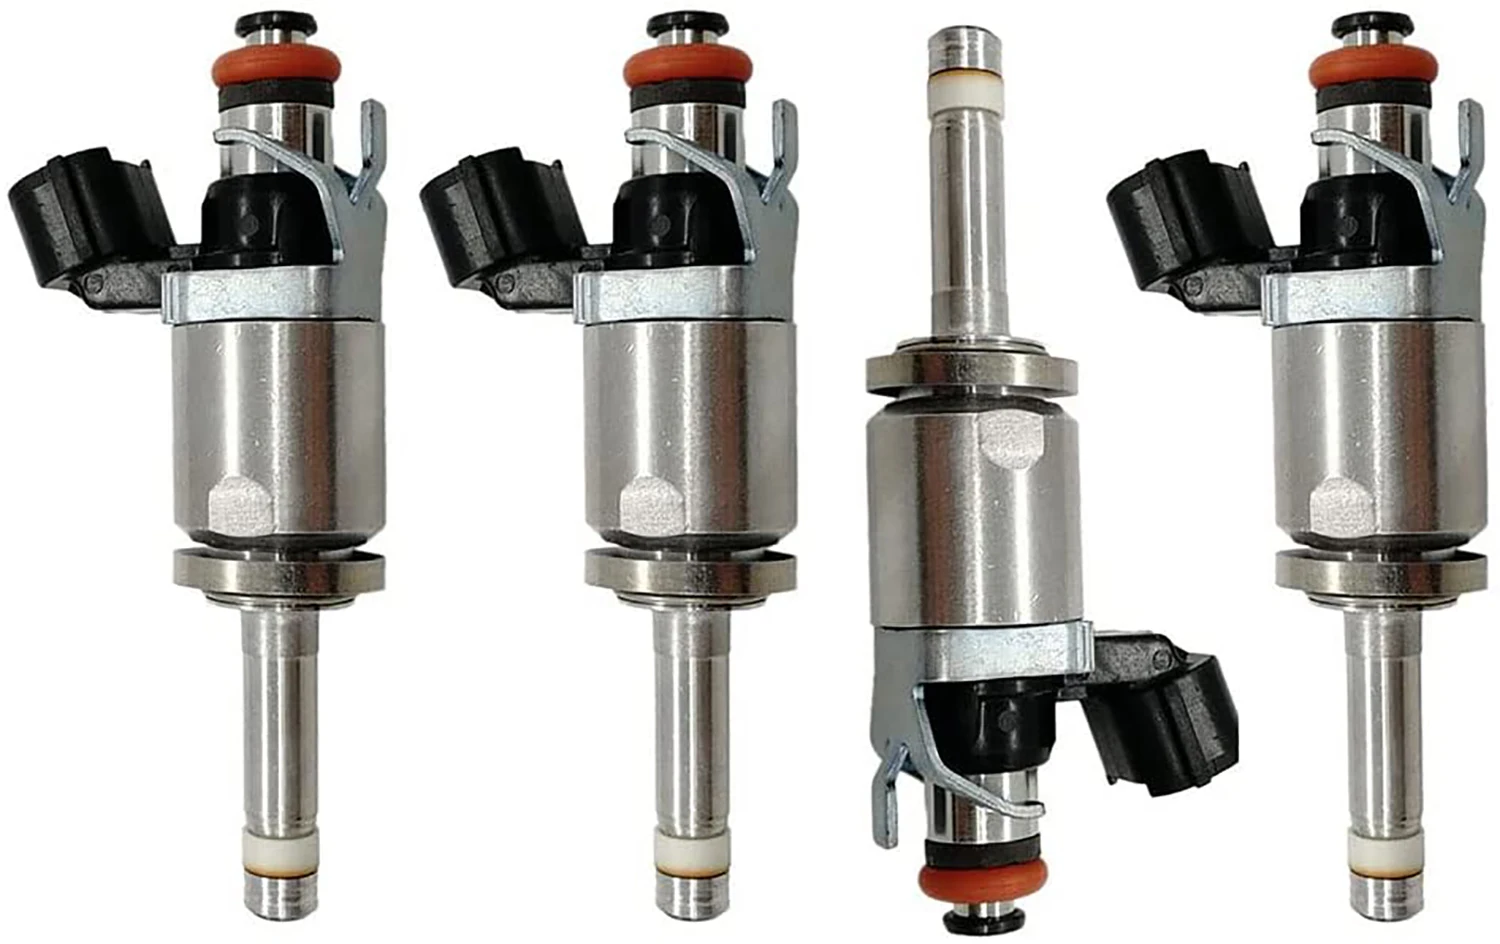 

4pcs Fuel Injectors 16450-5LA-A01 for Honda ACCORD CR-V Acura TLX ILX 2.4L 164505LAA01 16010-5LA-305